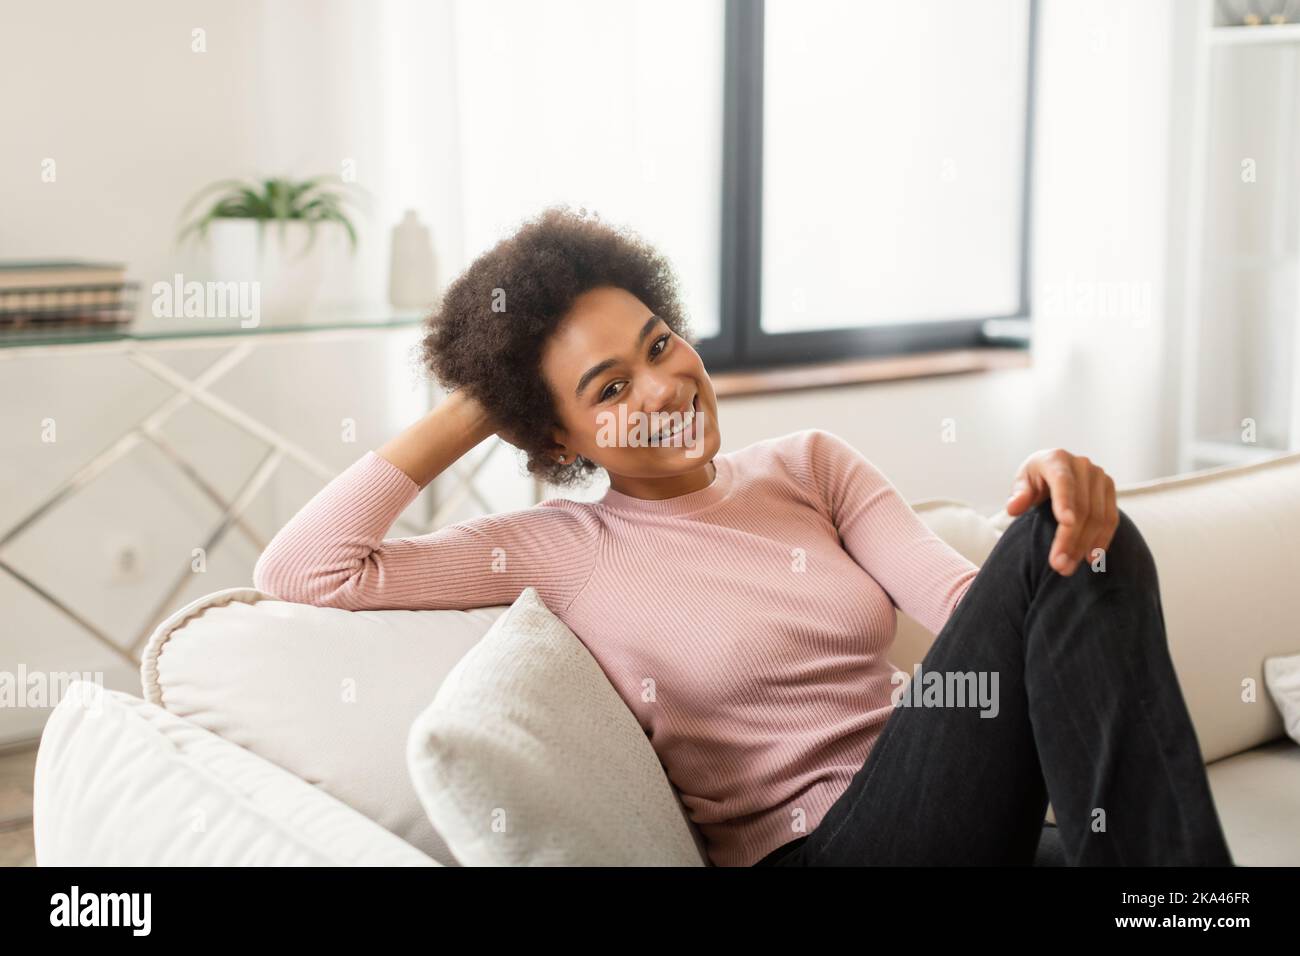 Allegro rilassato giovane afroamericana con capelli ricci sogno, si siede sul divano gode silenzio Foto Stock